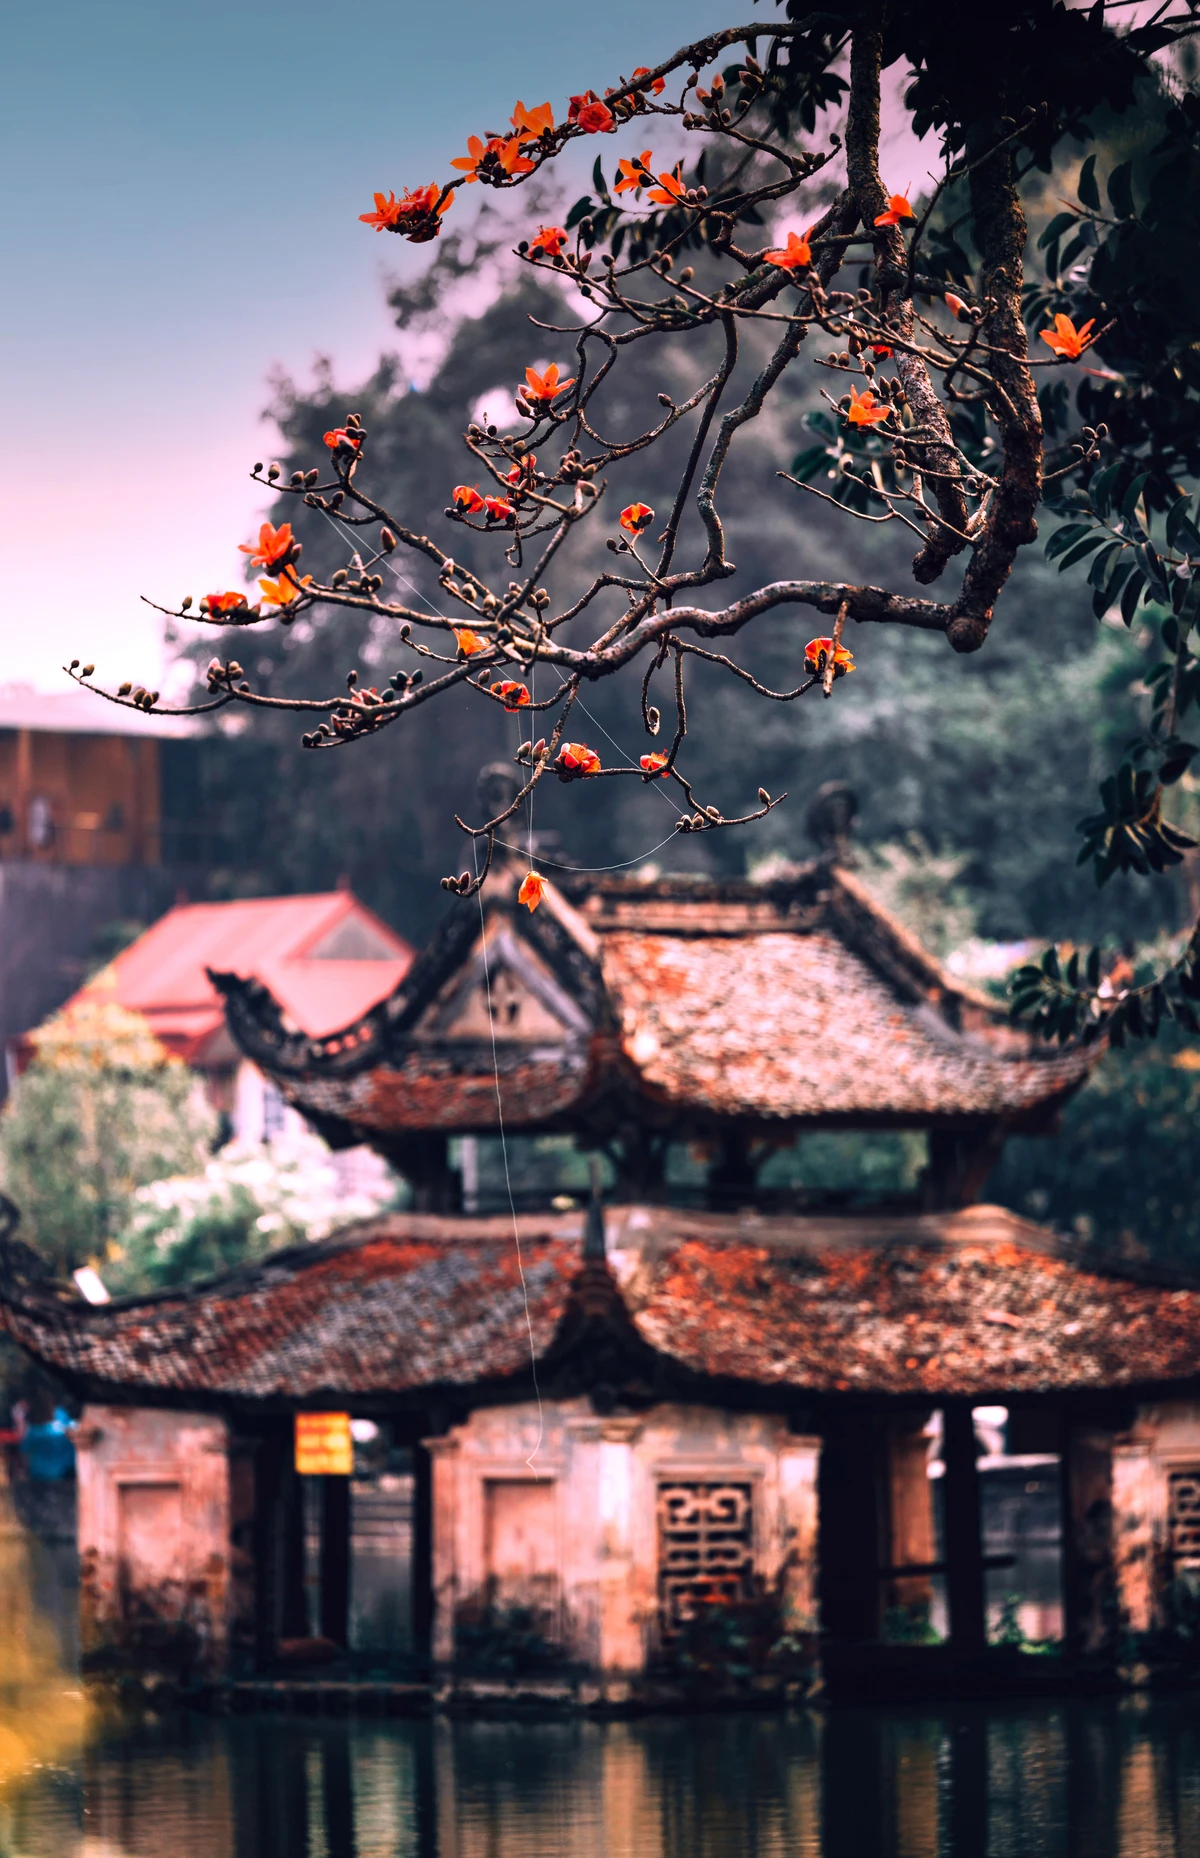 Ngắm hoa gạo nở đỏ rực bên ngôi chùa ngàn năm tuổi ở Hà Nội -2.jpg